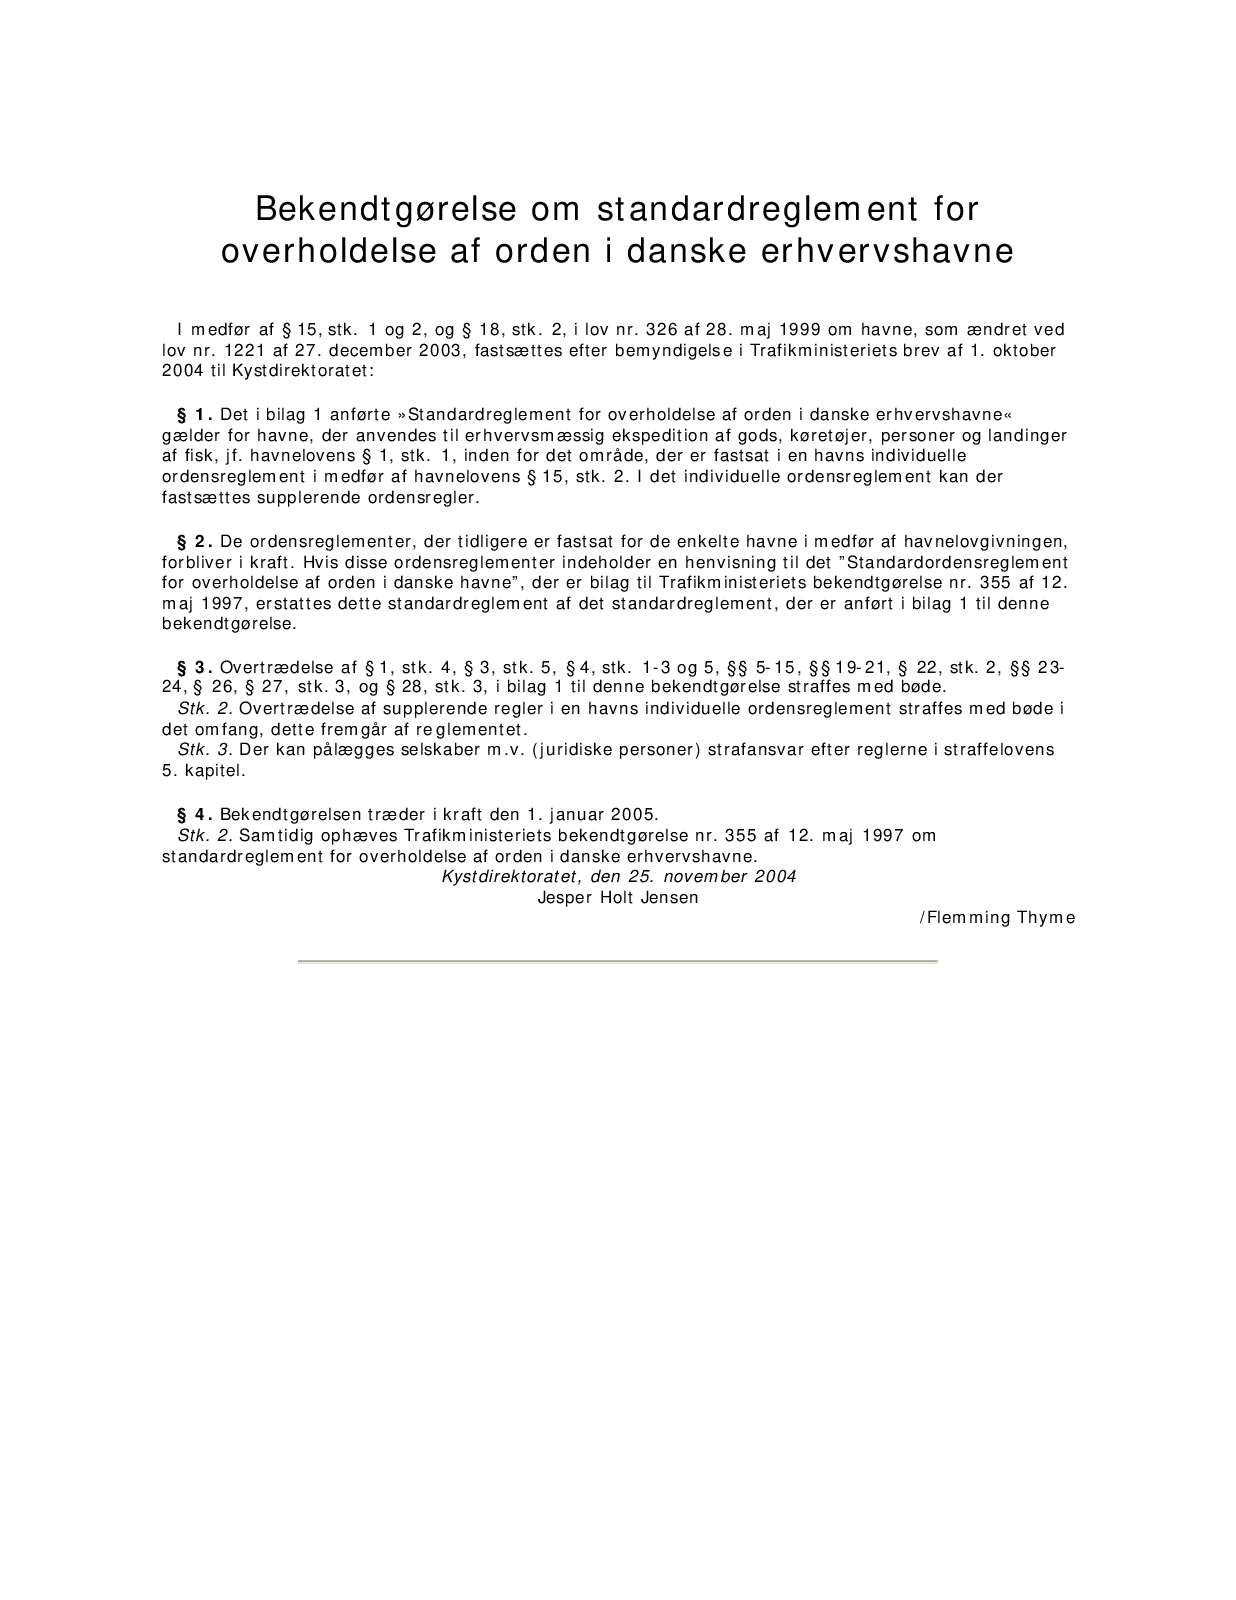 bekendtgoerelse om standardreglement pdf (Standardreglement for overholdelse af orden i danske erhvervshavne)